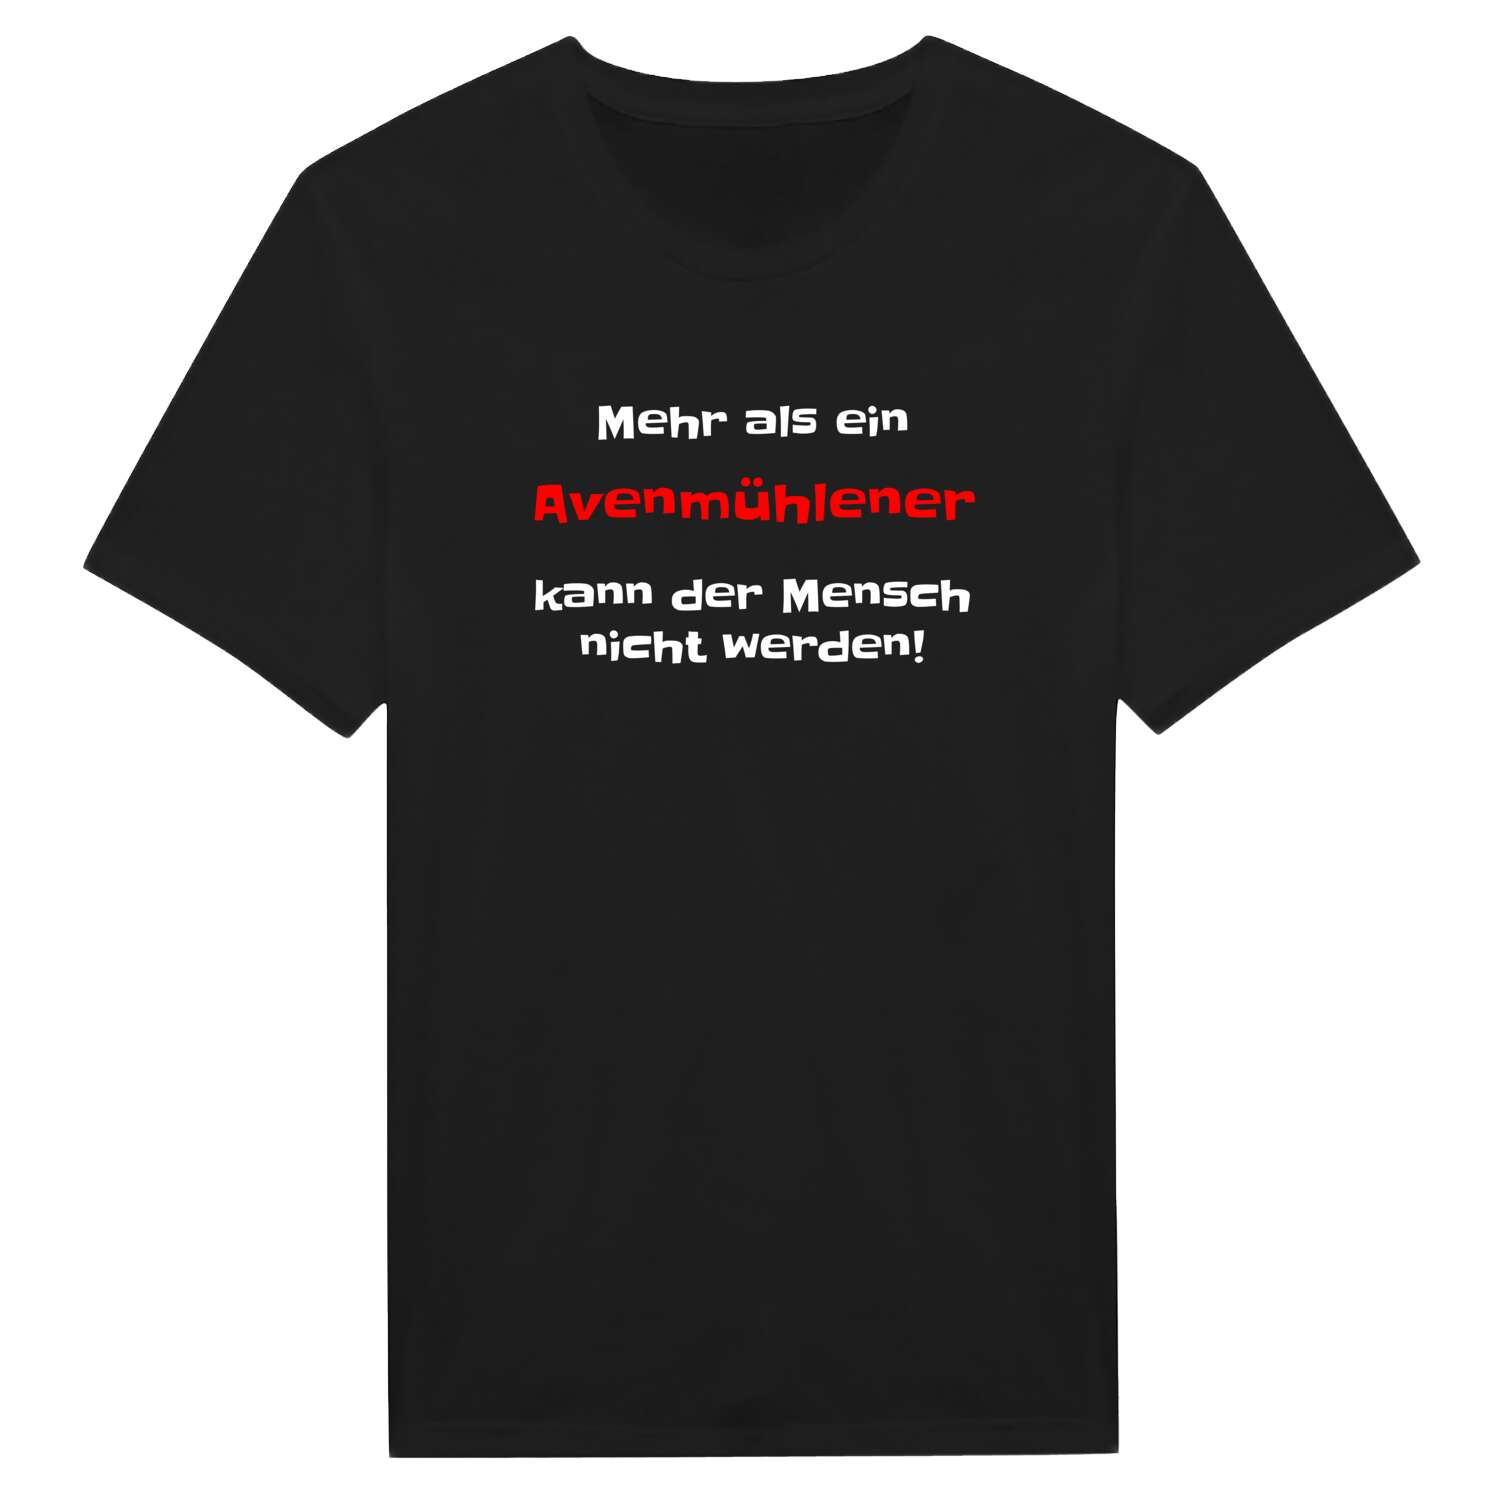 Avenmühle T-Shirt »Mehr als ein«